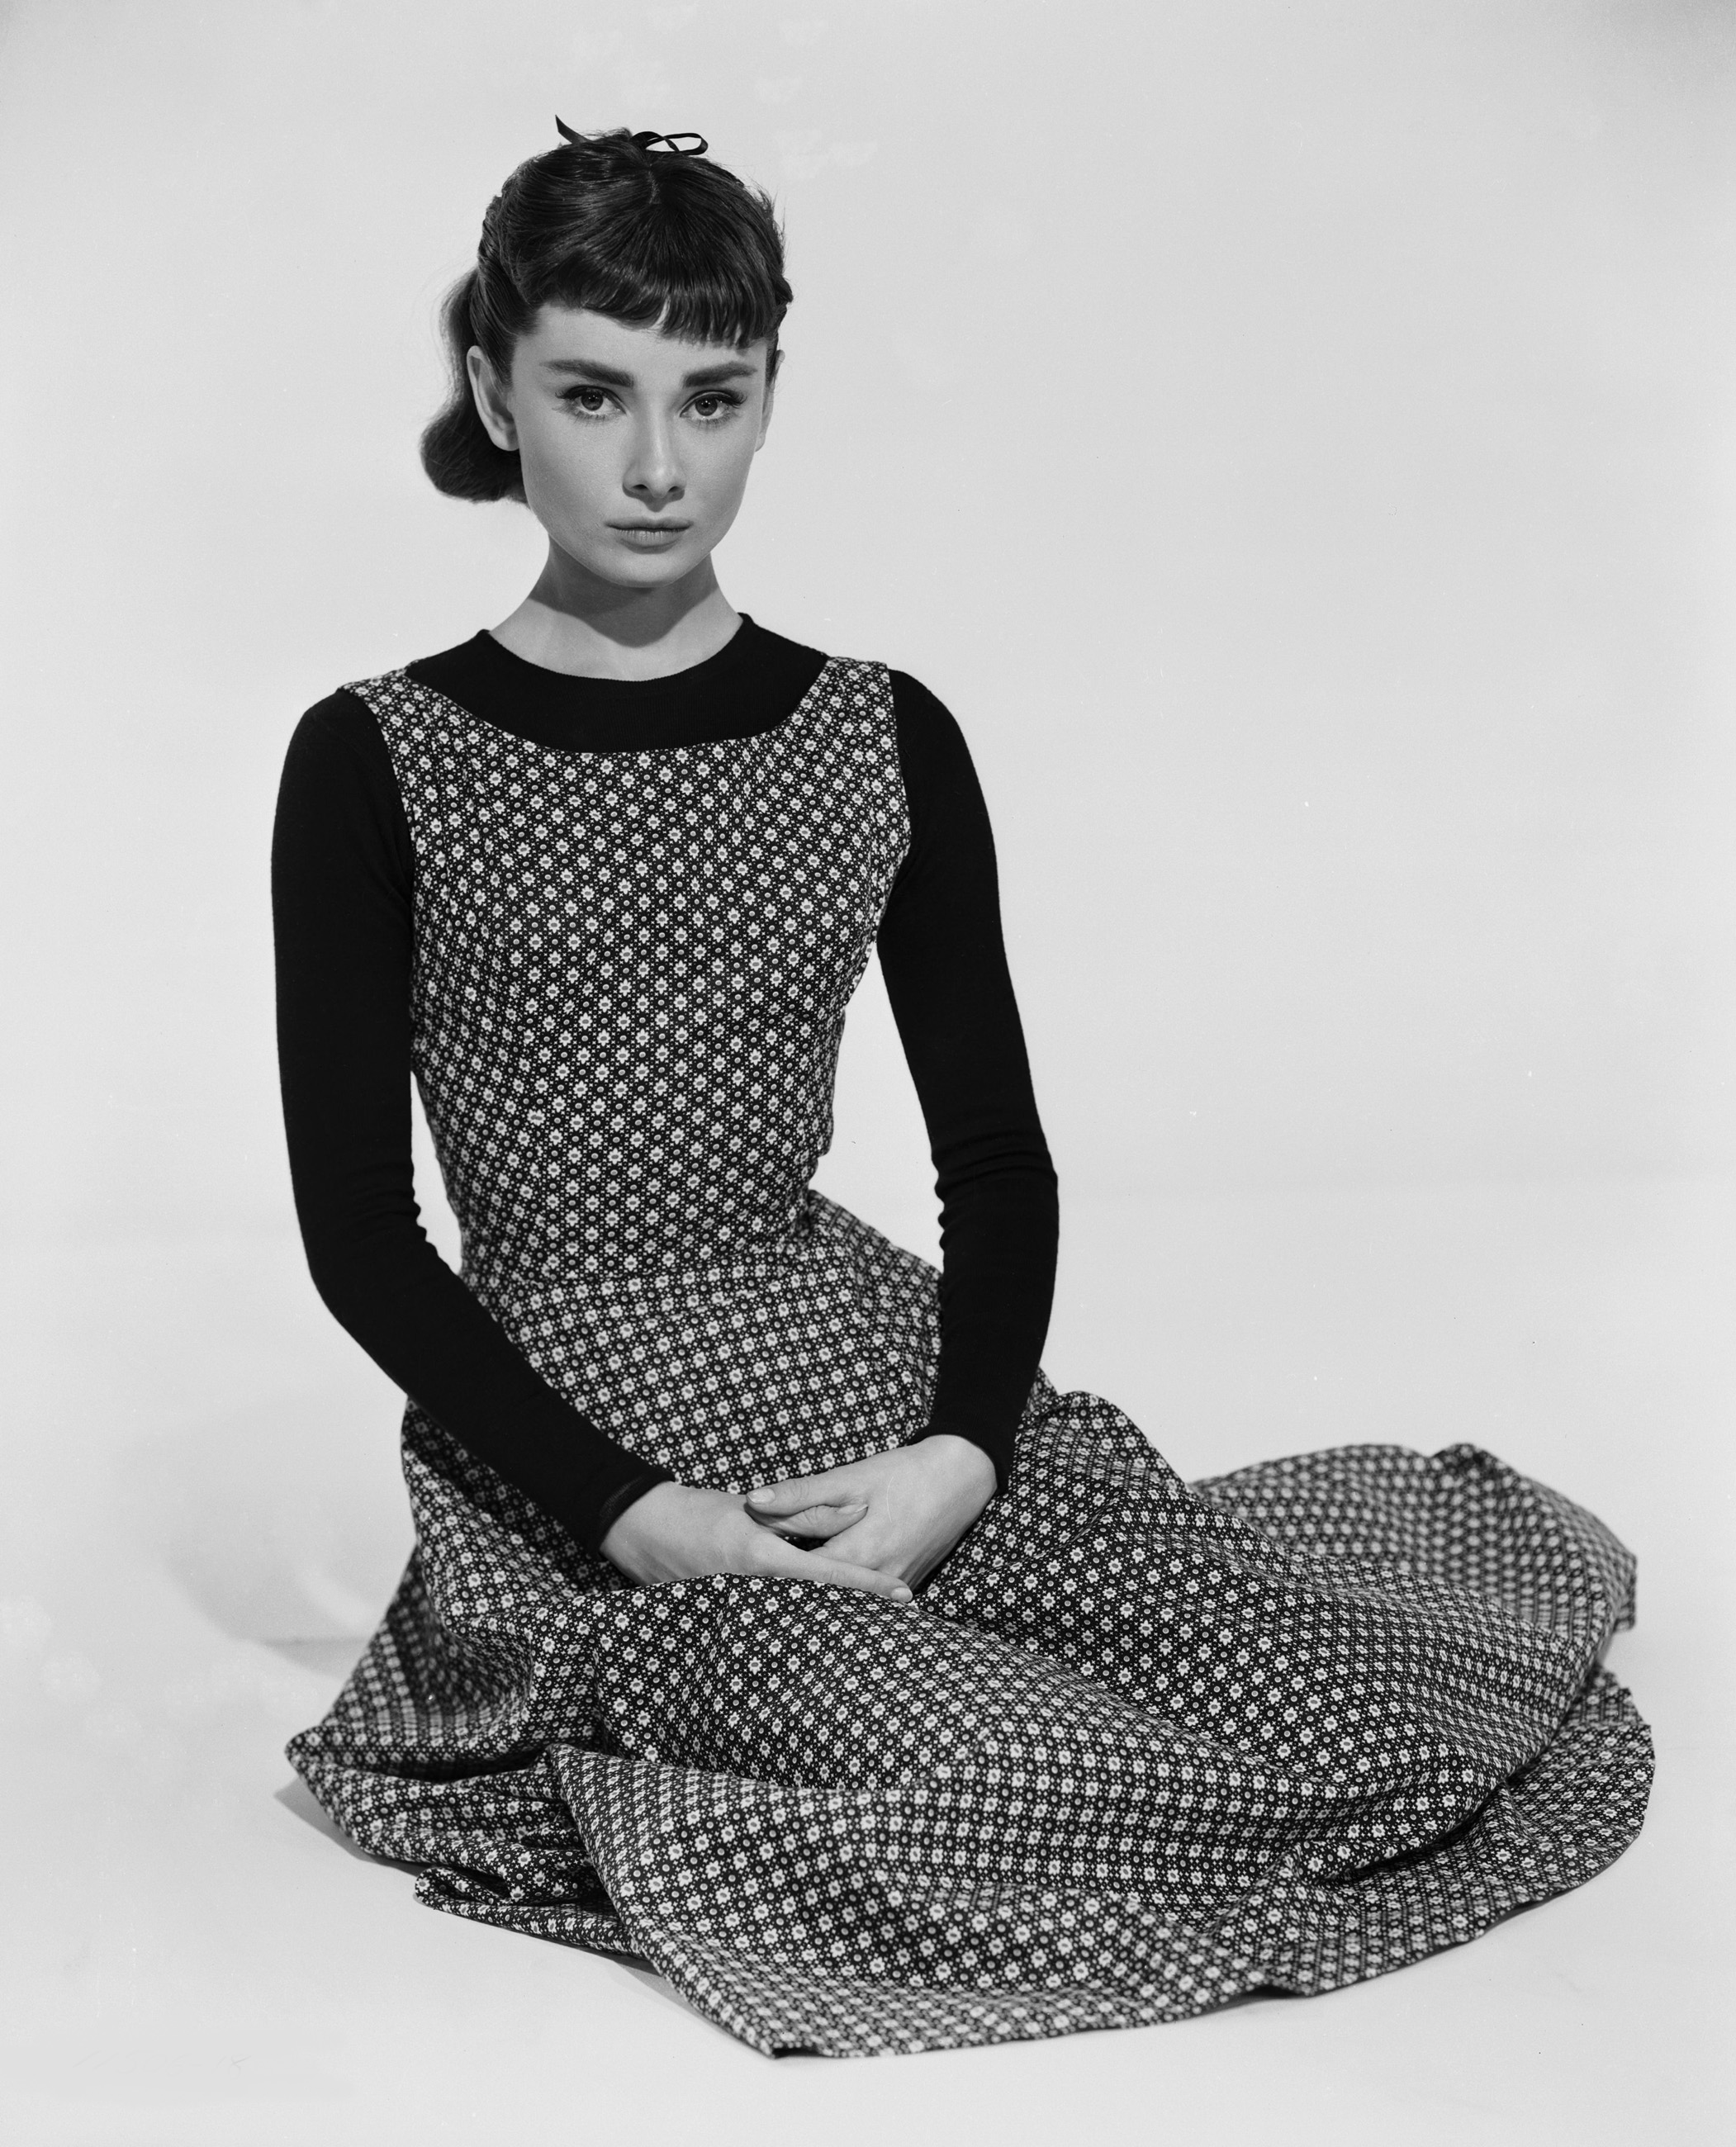 Audrey Hepburn's wardrobe in